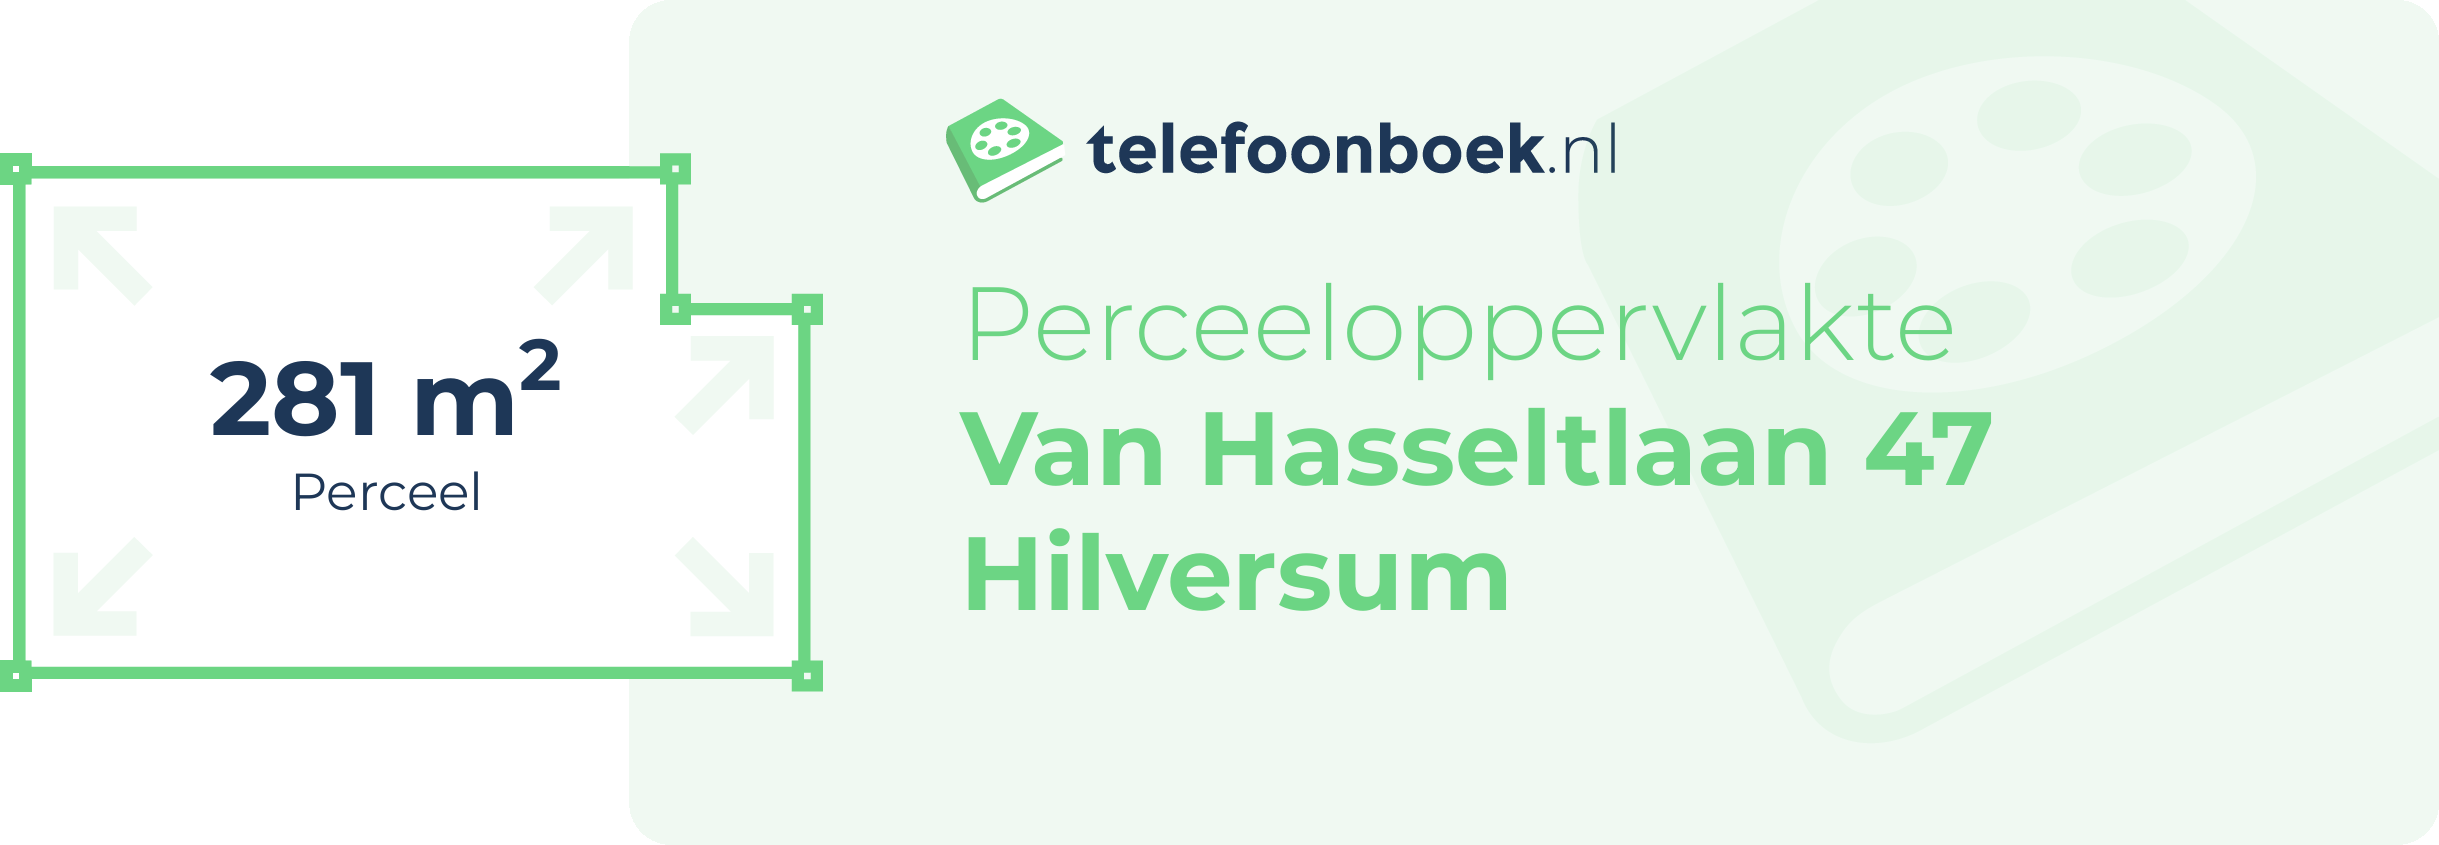 Perceeloppervlakte Van Hasseltlaan 47 Hilversum